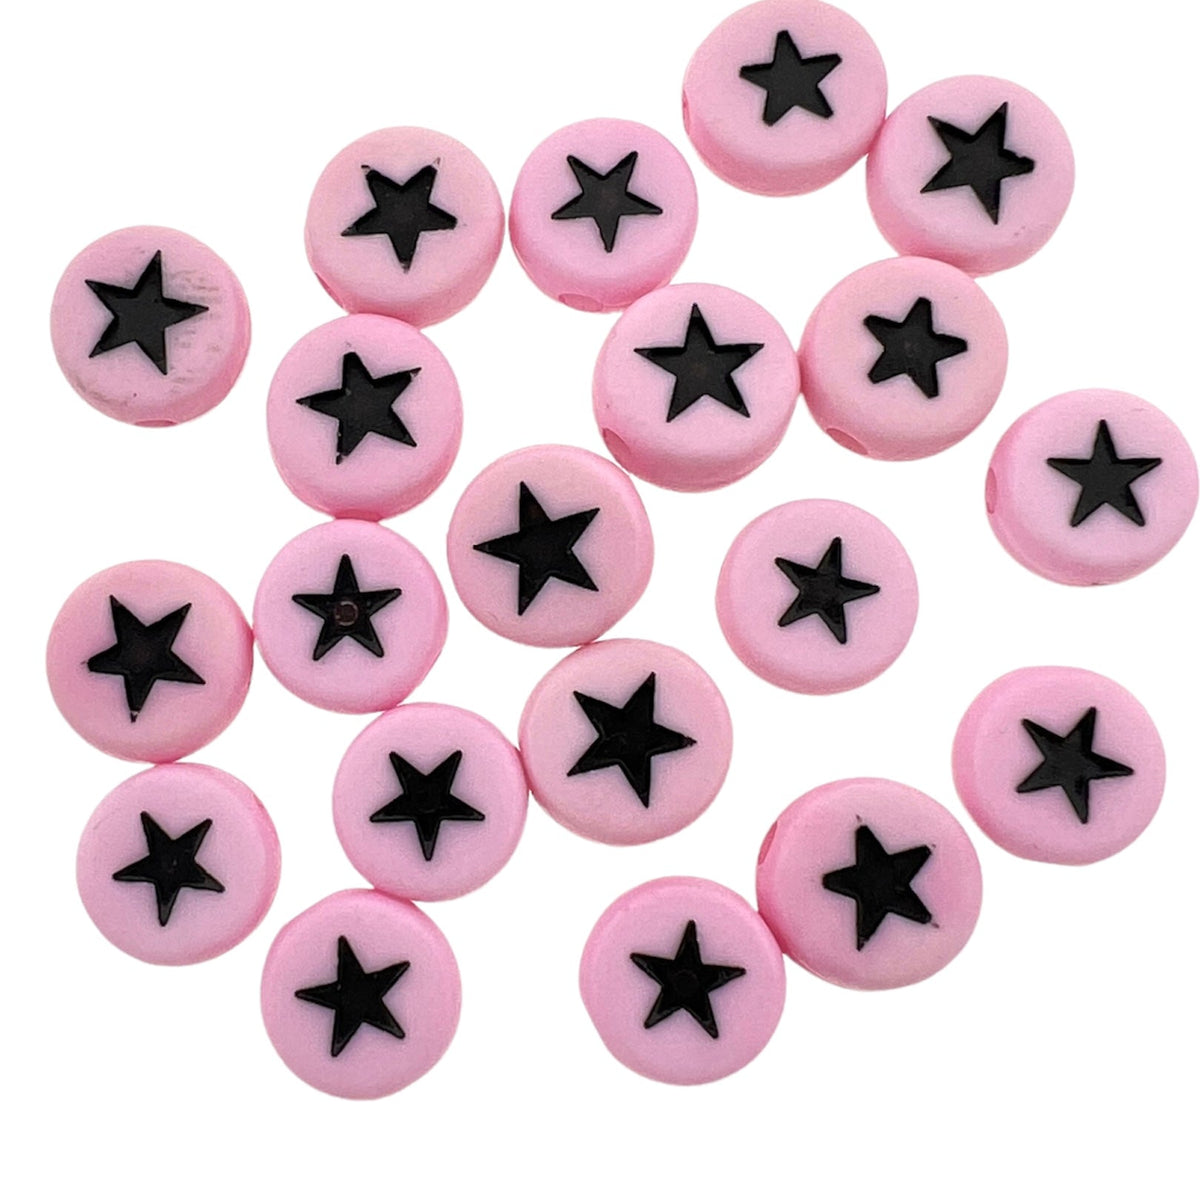 Acryl Letterkraal acryl sterretjes roze-zwart 7mm - 20 stuks-Kralen-Kraaltjes van Renate